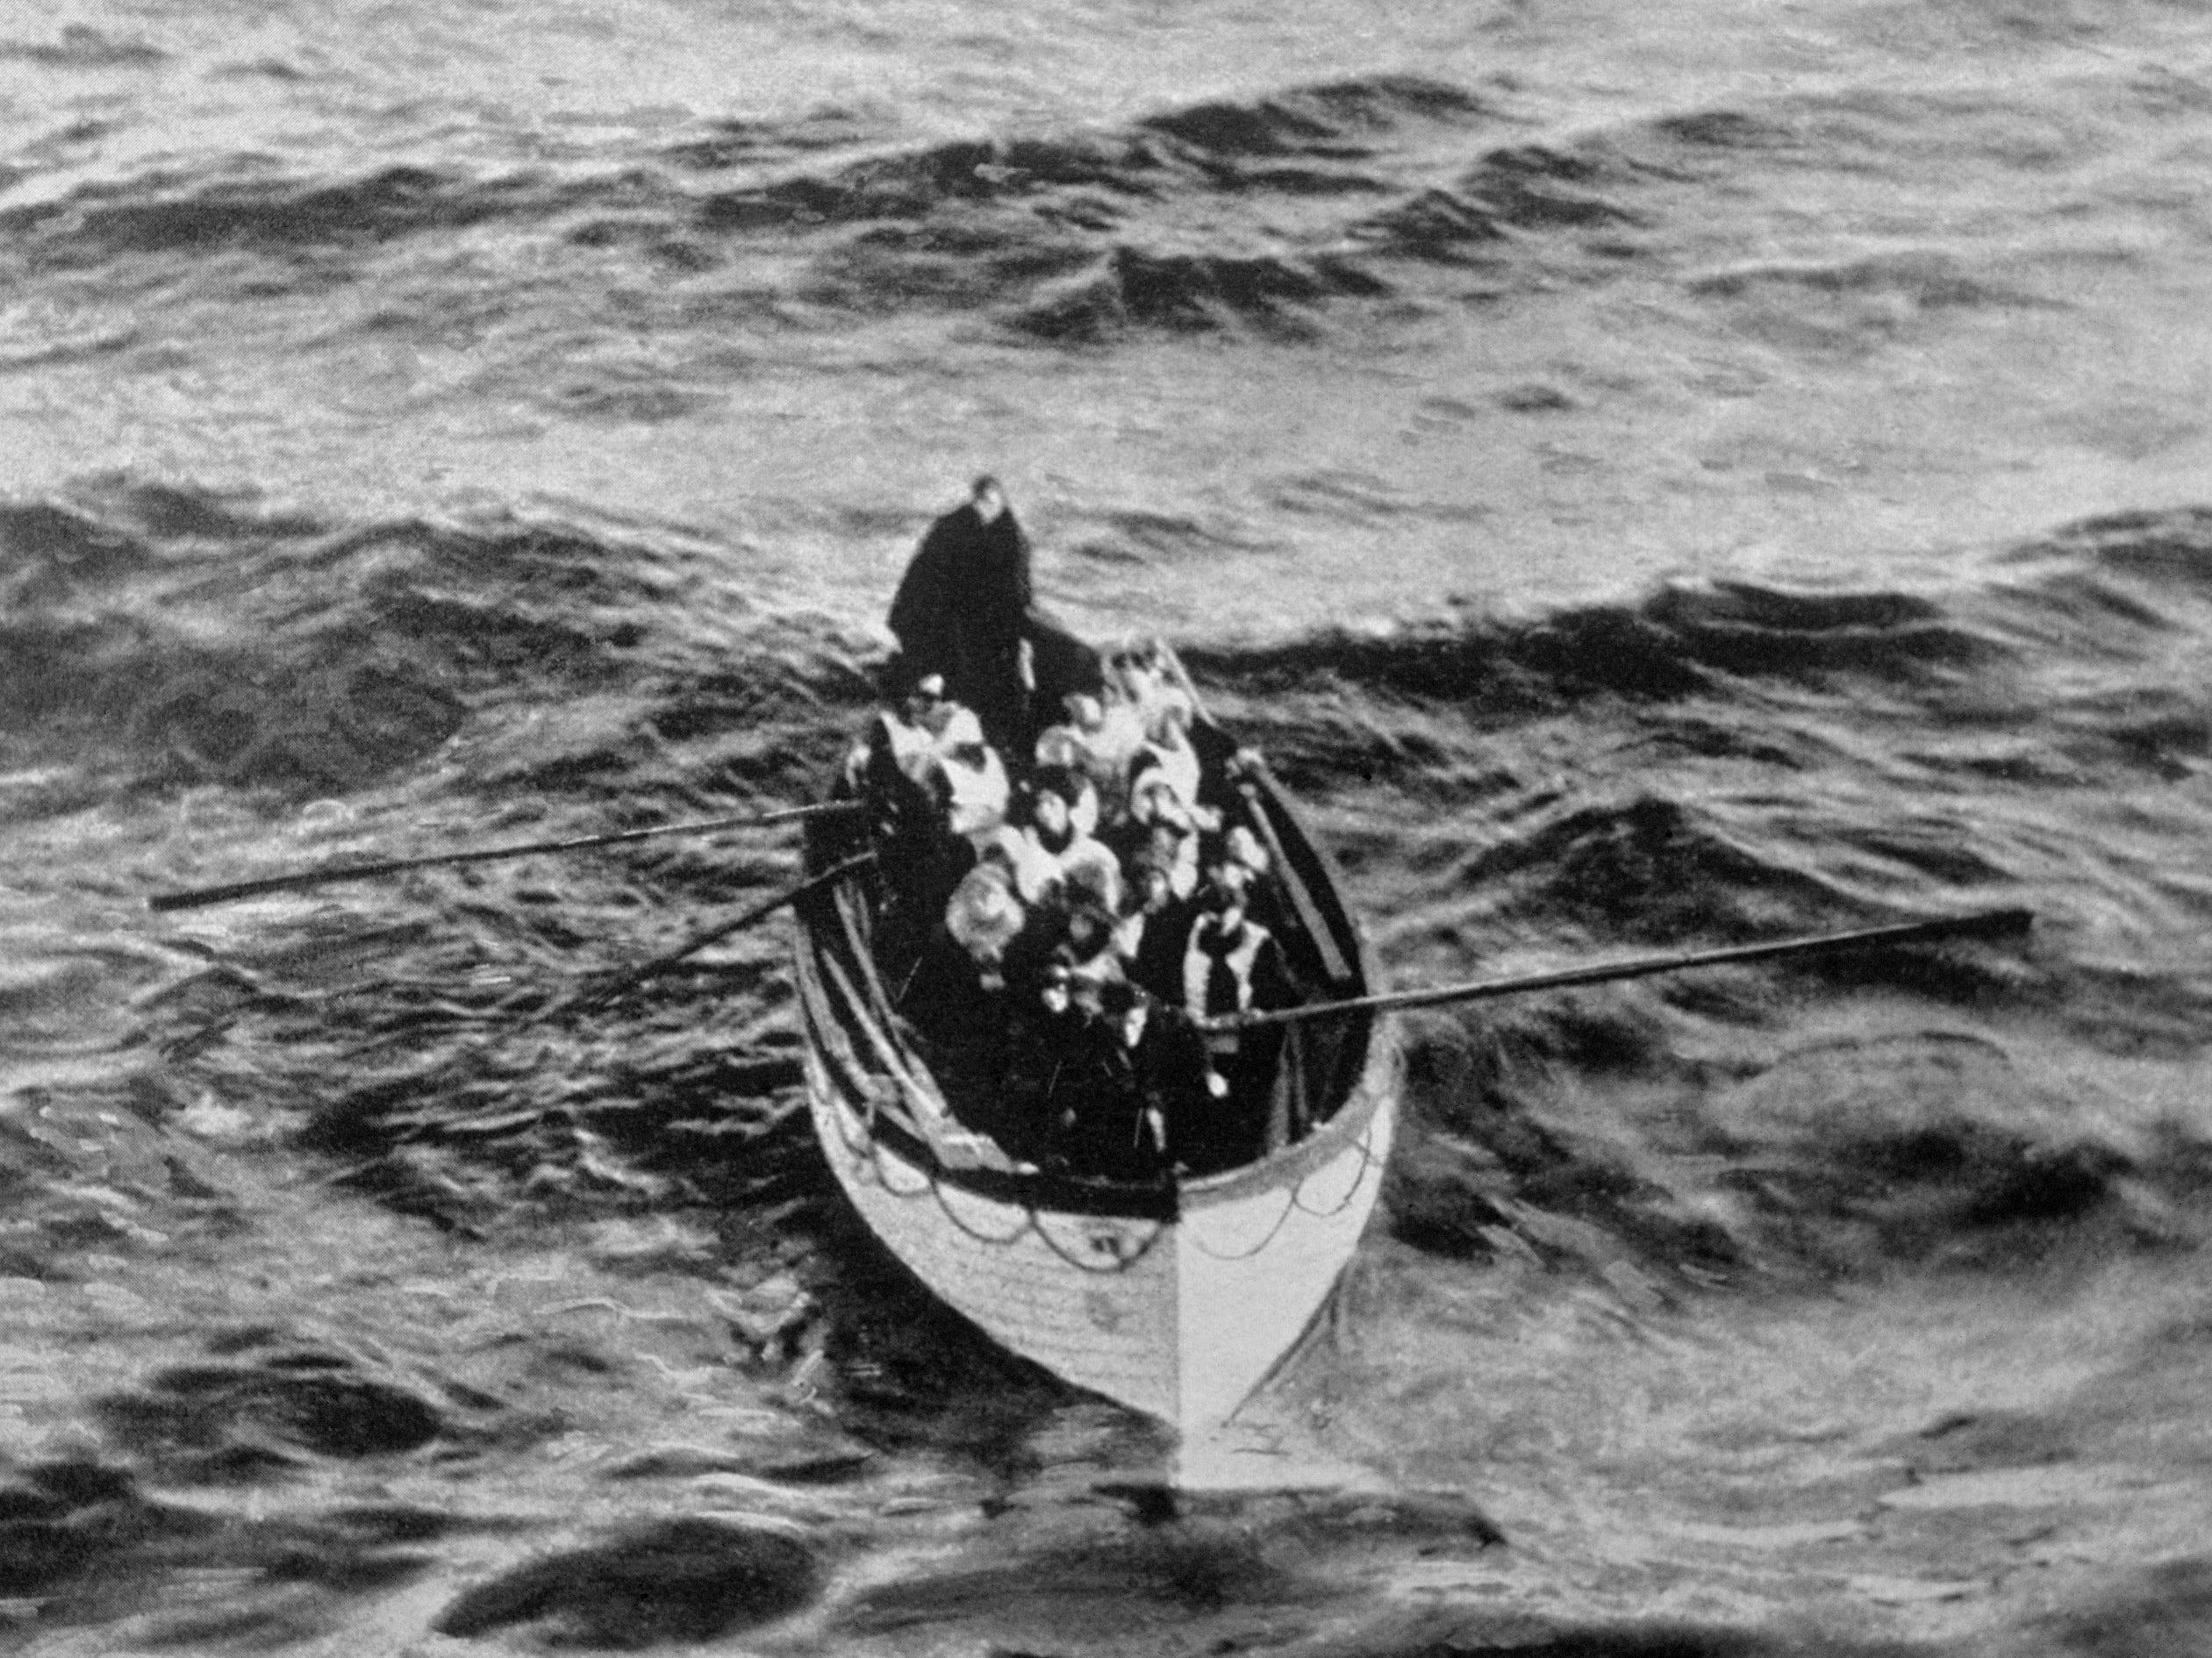 Ein Notkutter-Rettungsboot mit einigen Überlebenden der Titanic, das am Morgen des 15. April, Stunden nach der Katastrophe, in der Nähe des Rettungsschiffs Carpathia trieb.  Die Titanic verfügte nicht über genügend Rettungsboote, um alle ihre Passagiere zu retten, und viele der verfügbaren Boote wurden mit weniger als 65 Passagieren befördert